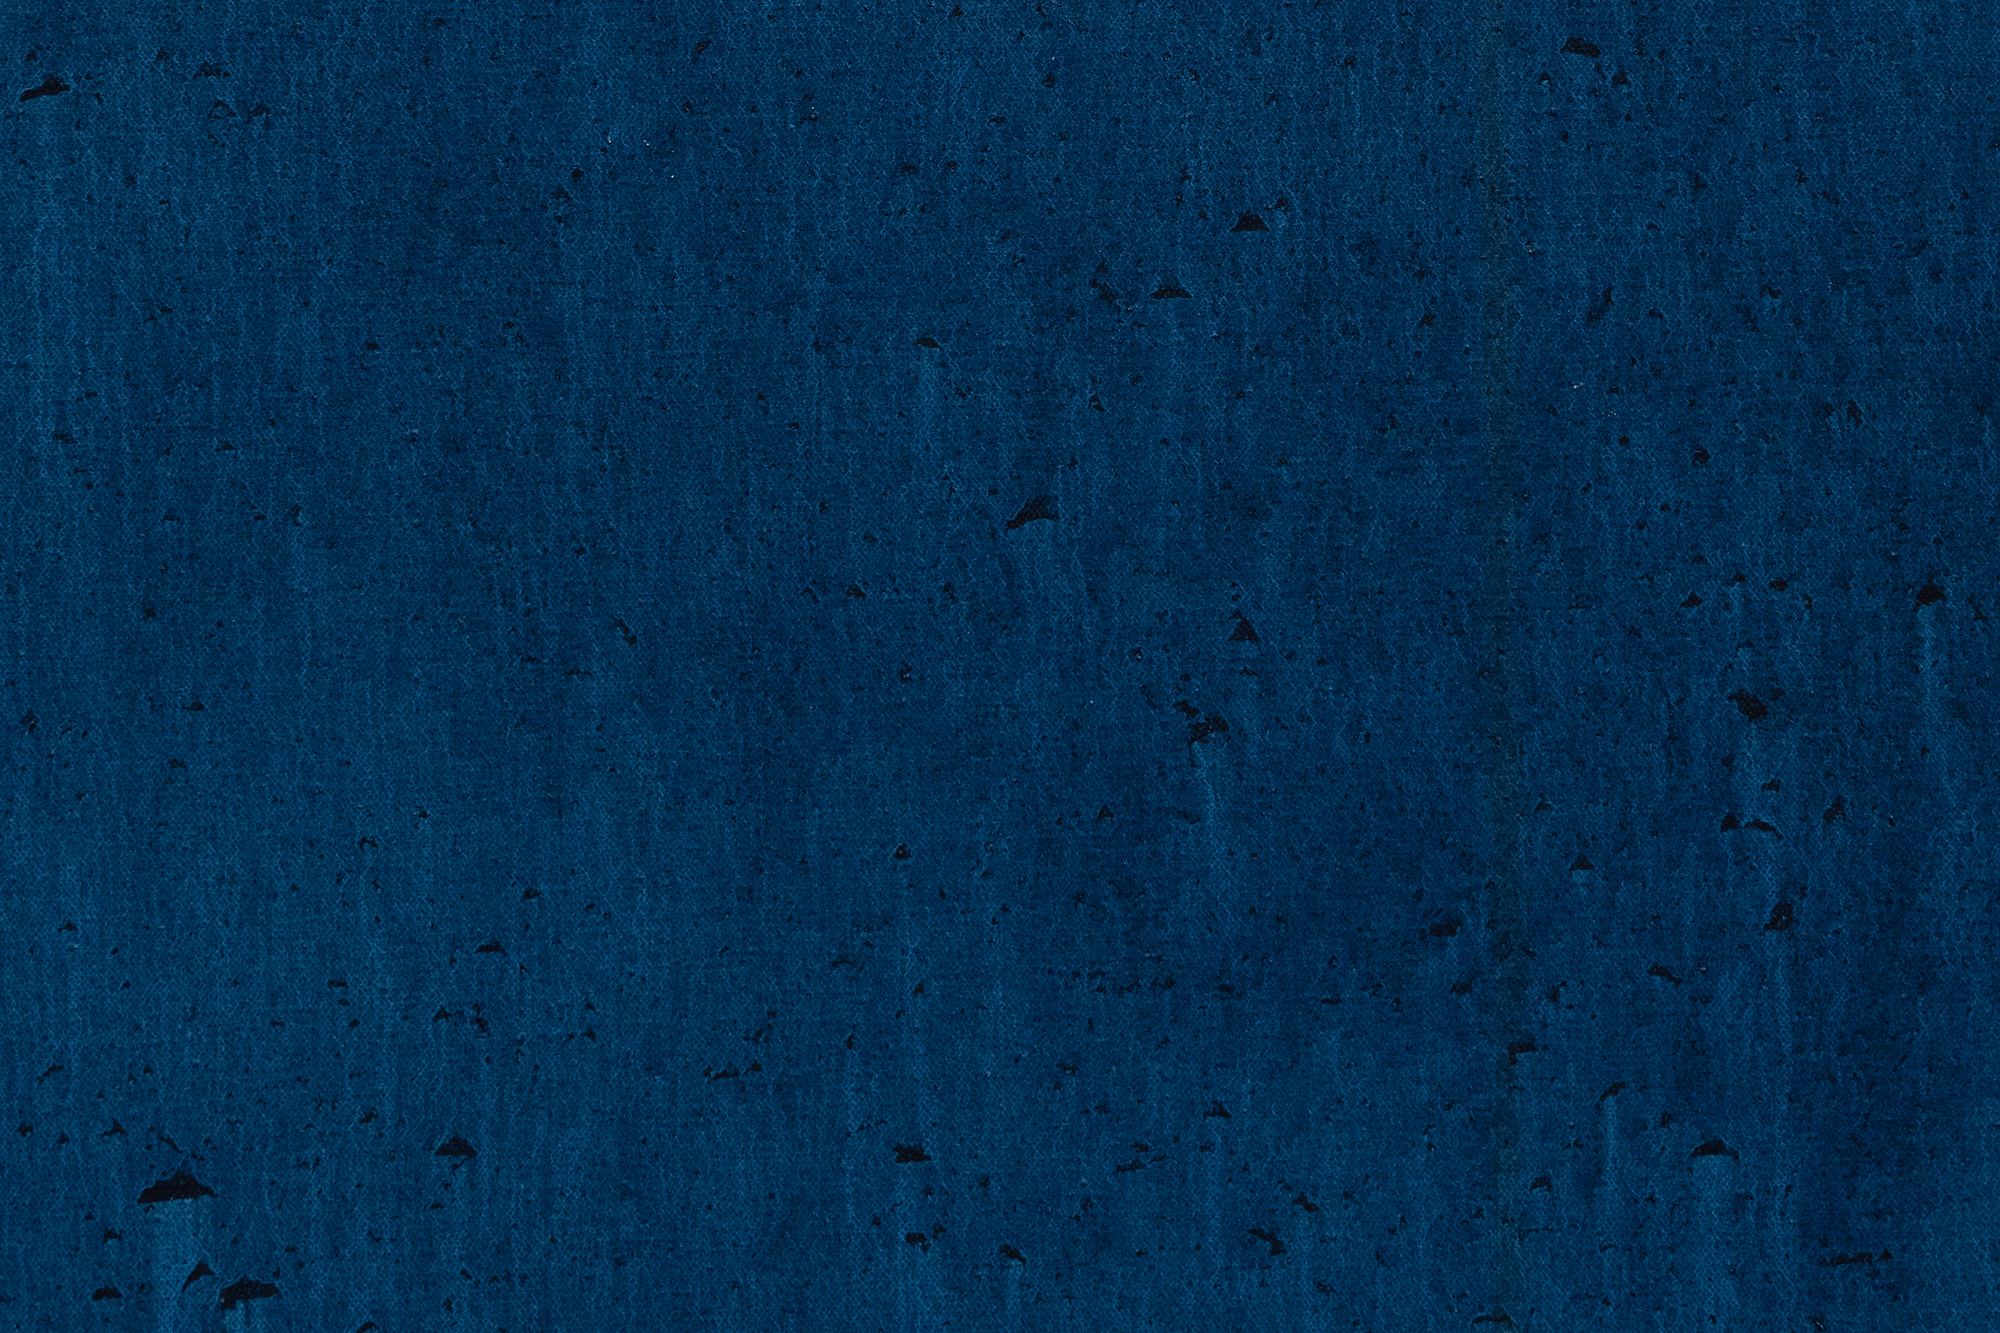 في وقت مبكر من نضجها ، أثبتت هود نفسها كفنانة للصور المشحونة ميتافيزيقيا التي انخرطت في مختلف علم الكونيات عند عودتها إلى هيوستن في عام 1962. بلو ووترز هي من بين تلك الأعمال التي تعكس بحثها المستمر عن القوت الروحي. يصل شريط من اللون الأزرق المشبع غير الشفاف إلى الأمام في كرة من اللون الأزرق السماوي الباهت ، تذكرنا بكرة أرضية مائية. يشبه هذا التدخل الجريء والمتناغم ذراعا أثيريا يحول حالة سائلة إلى أخضر فثالو فسفوري ساحر ، وبذخه وتألقه المتدفق يوحي بالتدخل الإلهي الذي يستحضر استعارة &quot;يد الله&quot; ، ويحرك جوهر الحياة. غالبا ما يدعو استخدام هود البارع للون والشكل إلى تفسيرات لاحتضان كوني أو روحي داخل العالم الطبيعي. ومع ذلك ، فإن غسلها الرقيق للون المصبوب لا يظهر العشوائية أو عدم اليقين ولكن إتقانها الرائع وسيطرتها التي تضيف عنصرا آخر من الرهبة إلى Blue Waters.